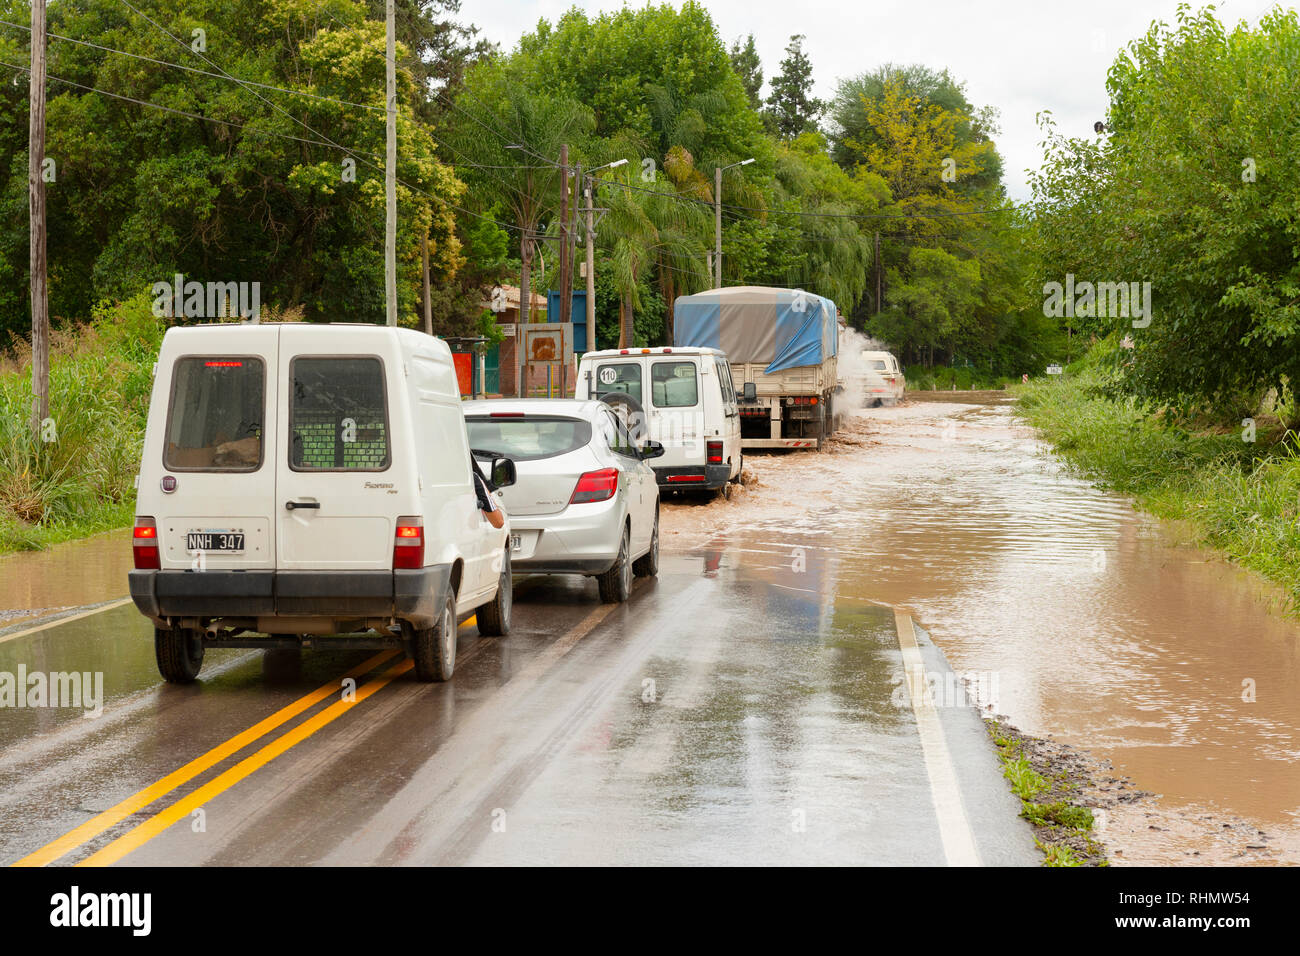 Una linea di traffico che entra in un invaso area di strada nella speranza è passabile. Immagine presa sul percorso 68, vicino a El Carril, Provincia di Salta, Argentina. Foto Stock